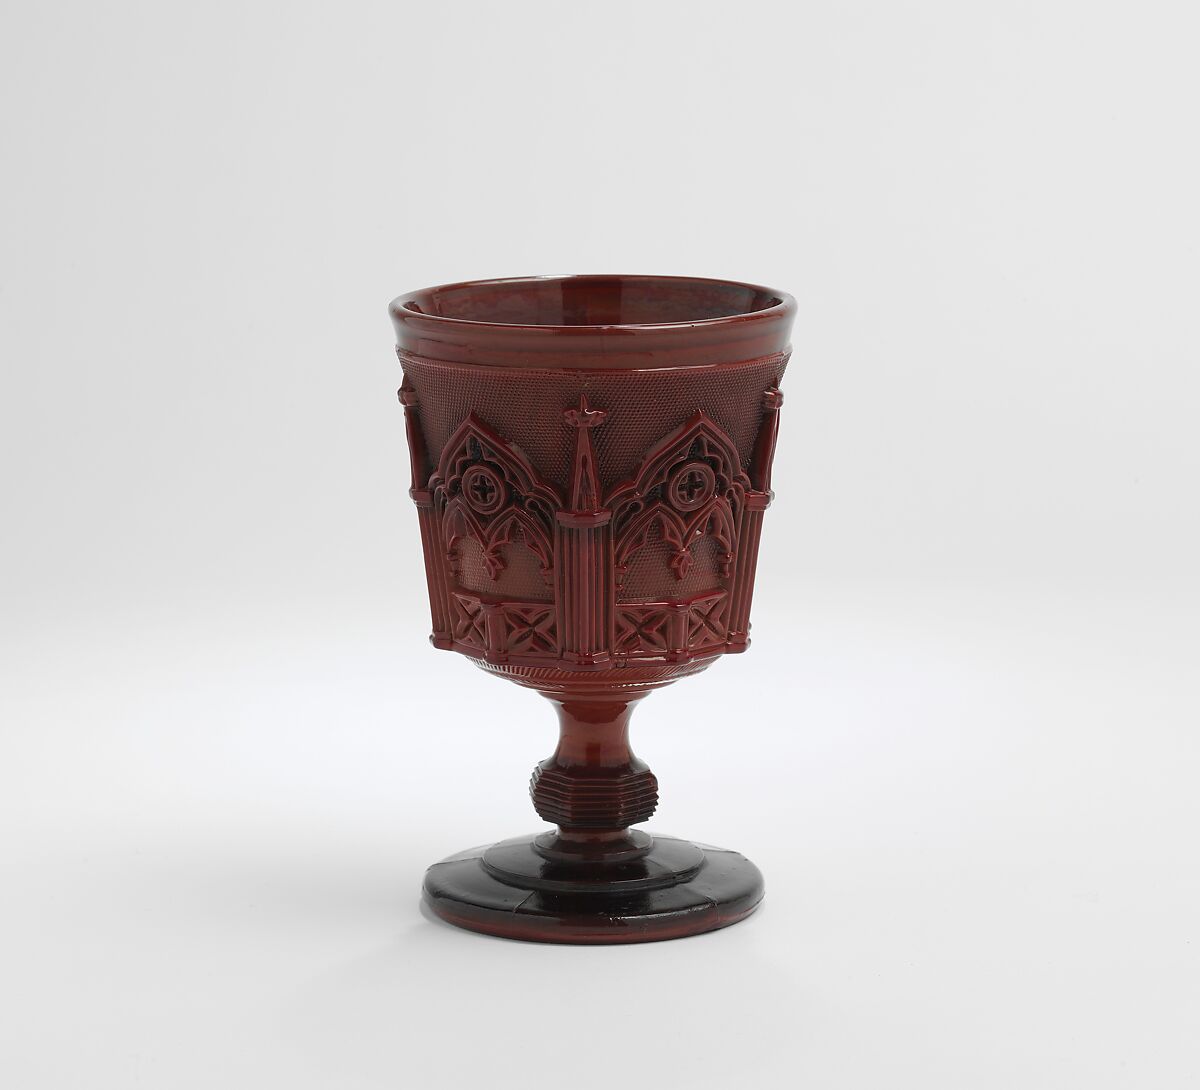 Water goblet, Probably made at Compagnie des Cristalleries de Saint-Louis (est. 1586 (as Verrerie de Münzthal); 1767 renamed as Compagnie des Cristalleries), Glass, French, Saint-Louis-les-Bitche 